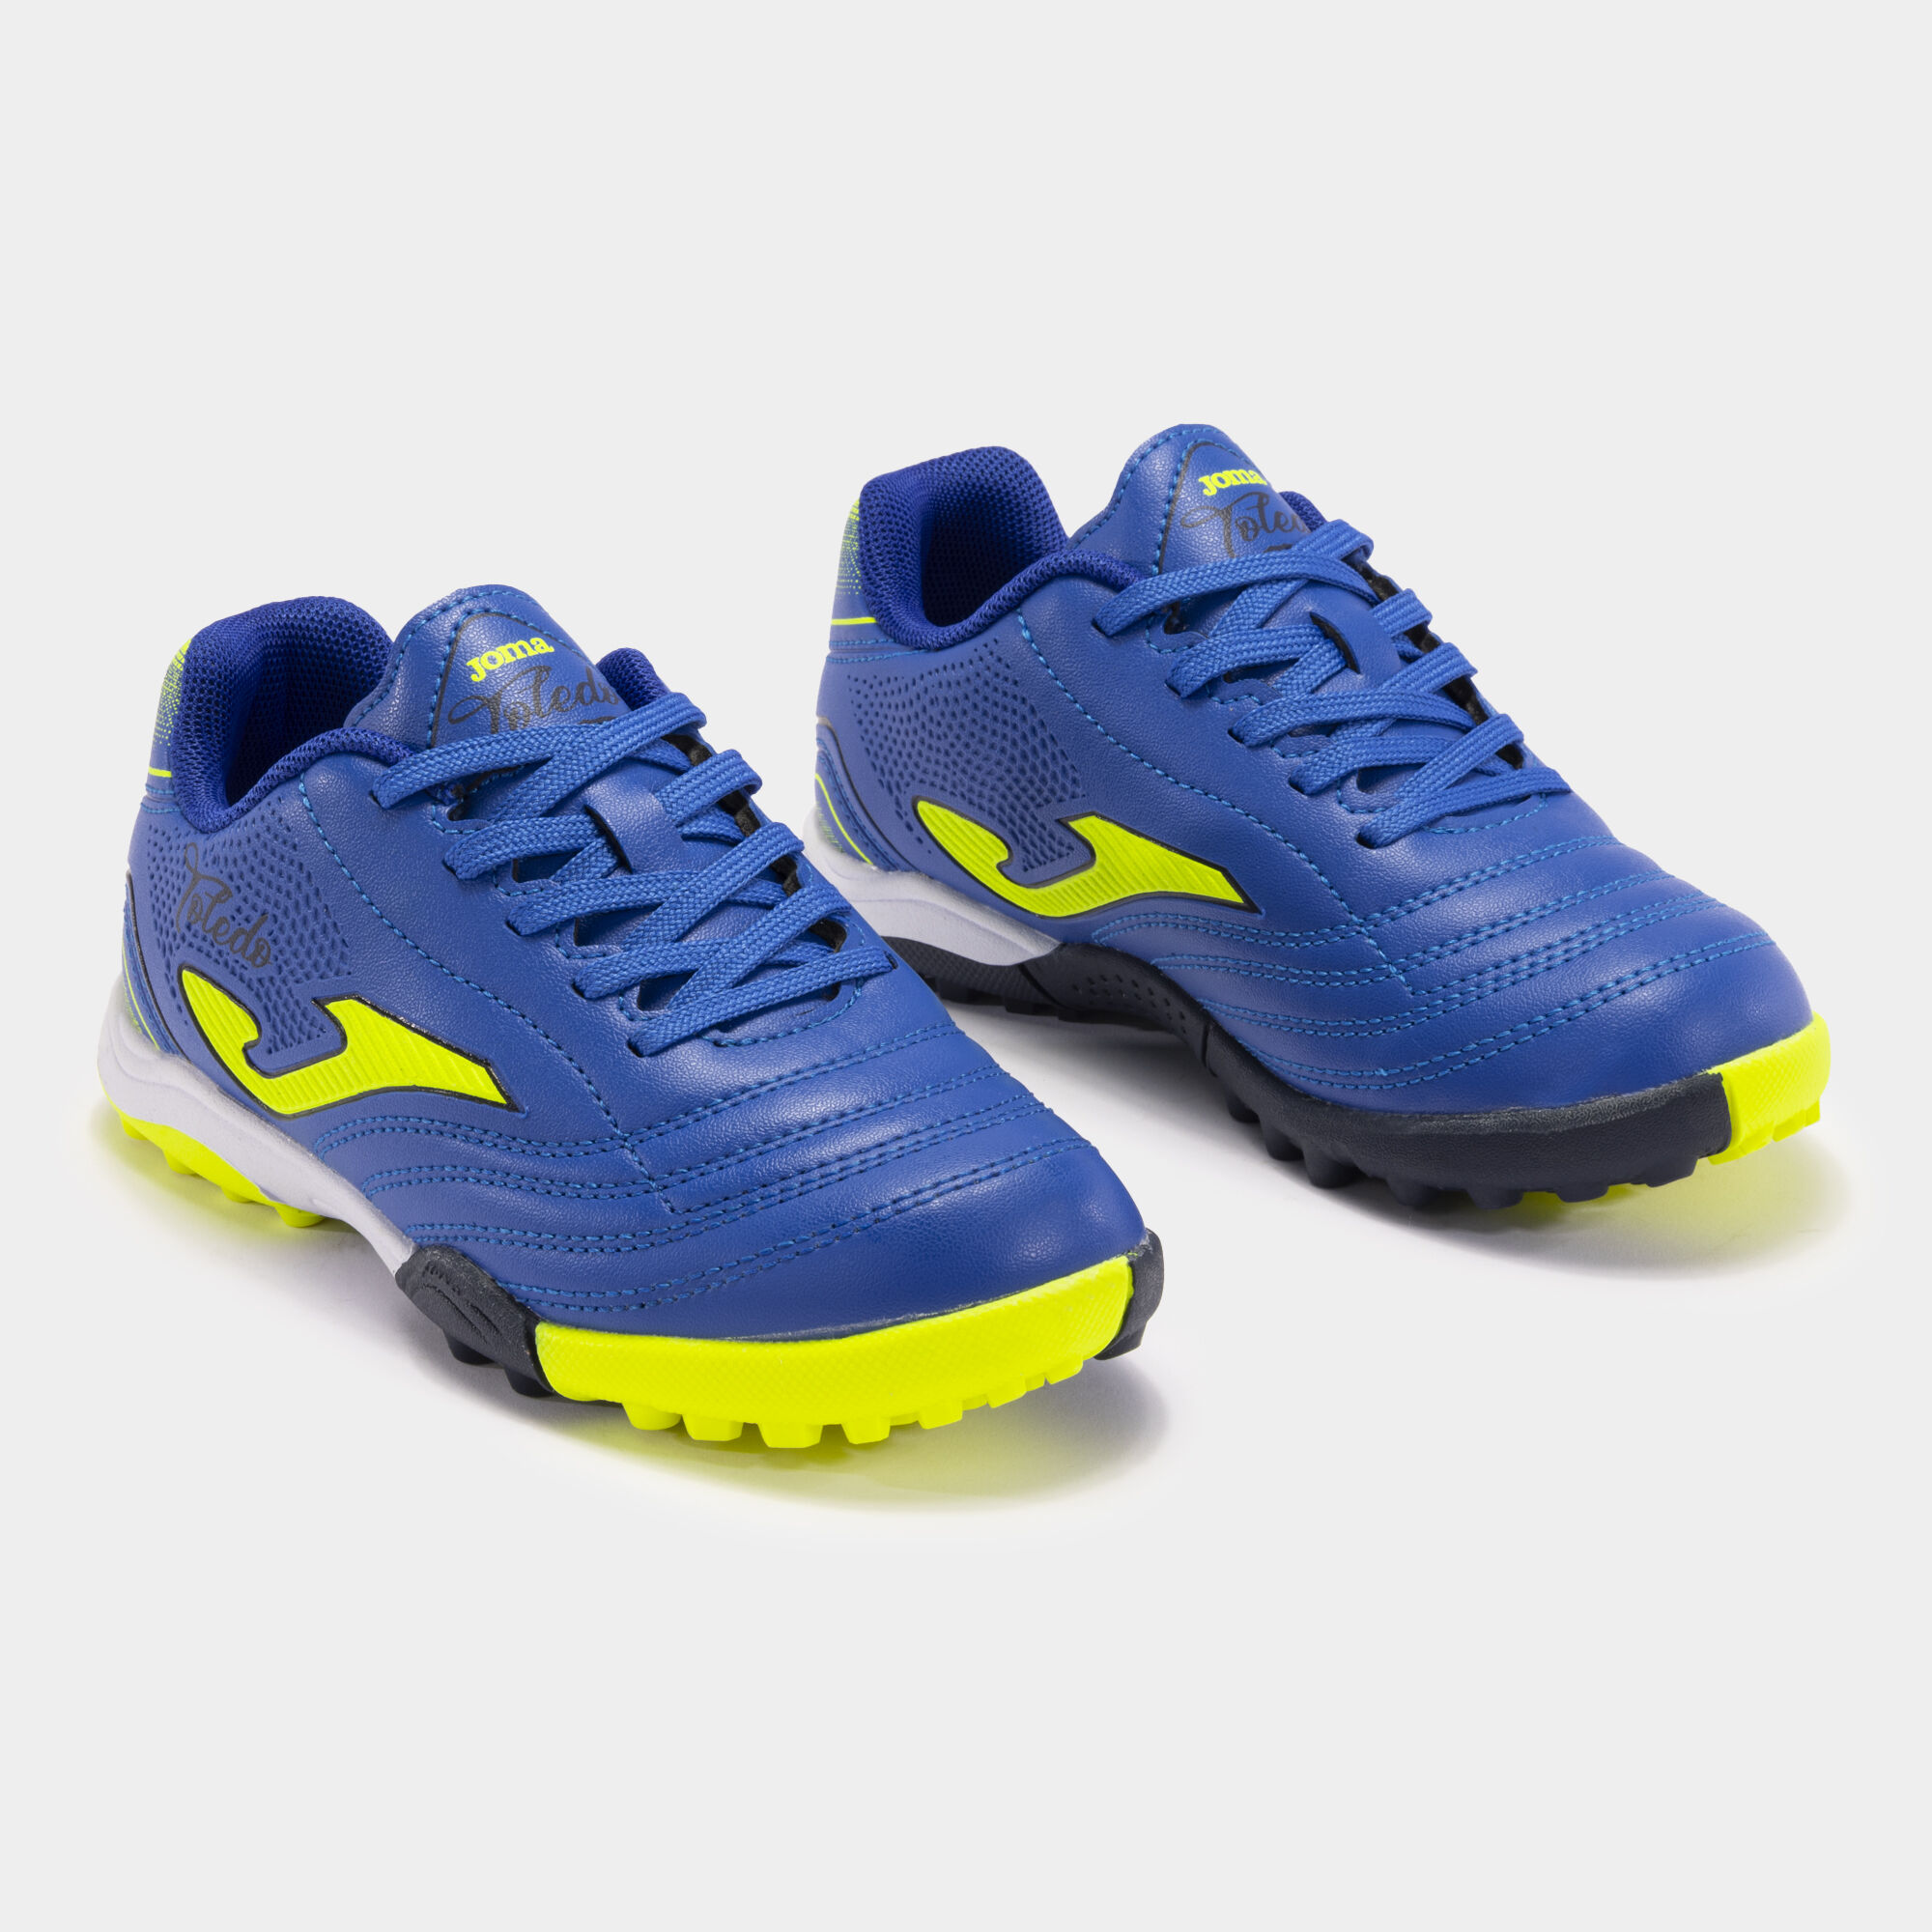 Buty piłkarskie Toledo Jr 24 syntetyczna nawierzchnia turf junior niebieski royal